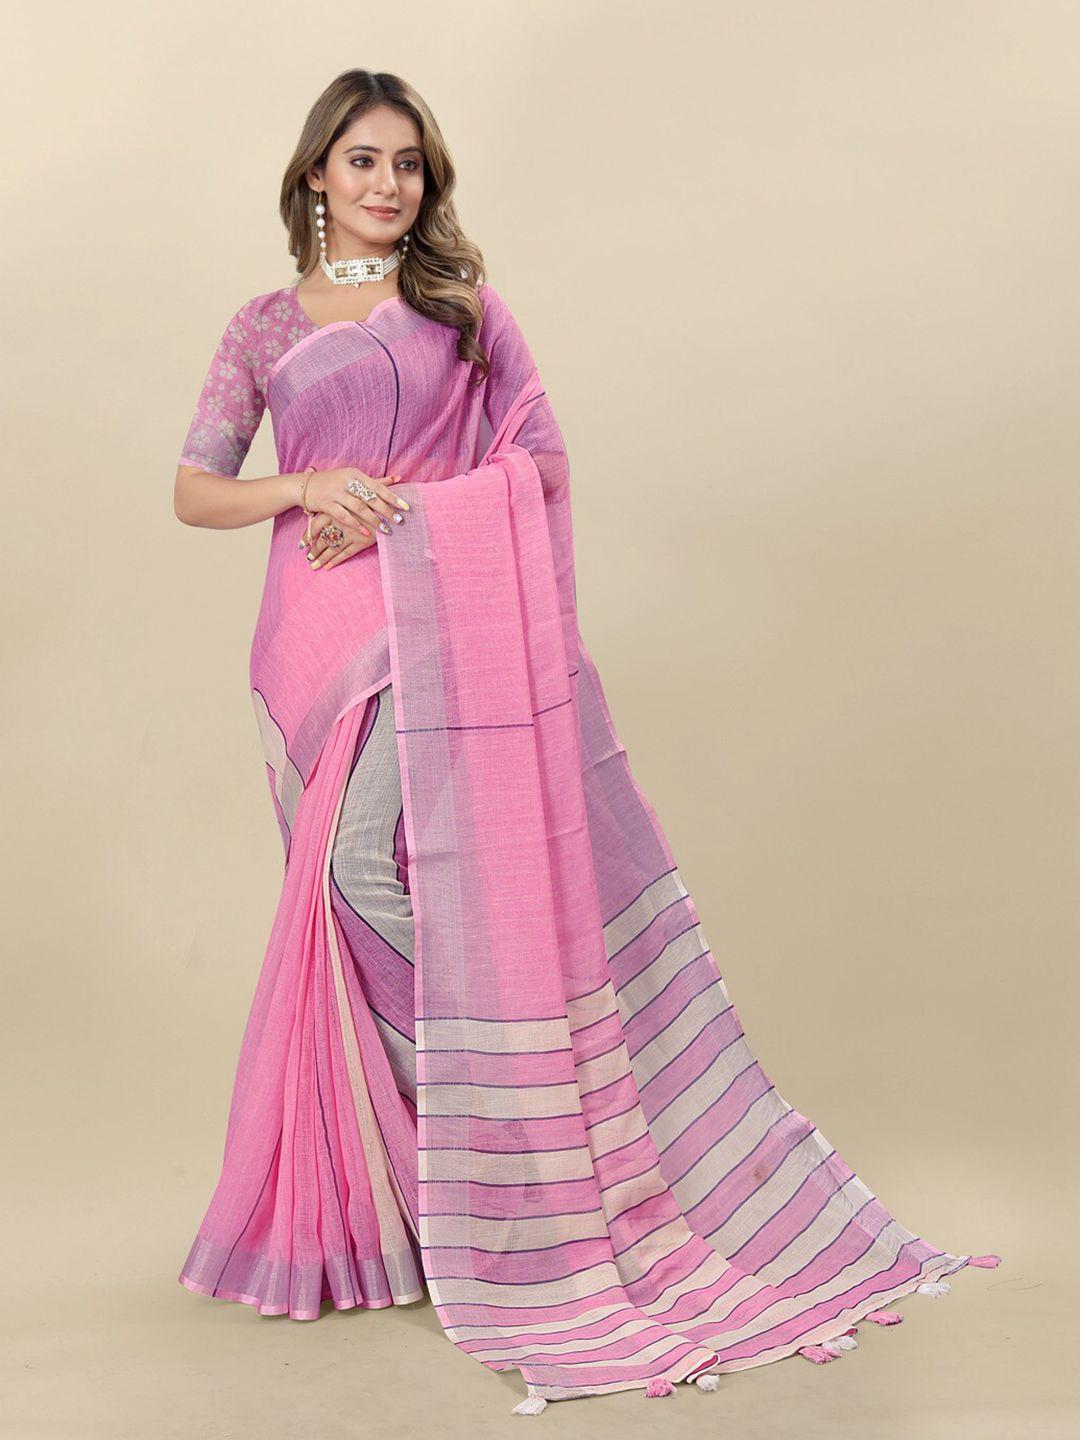 moksha designs striped pure linen saree with tassels